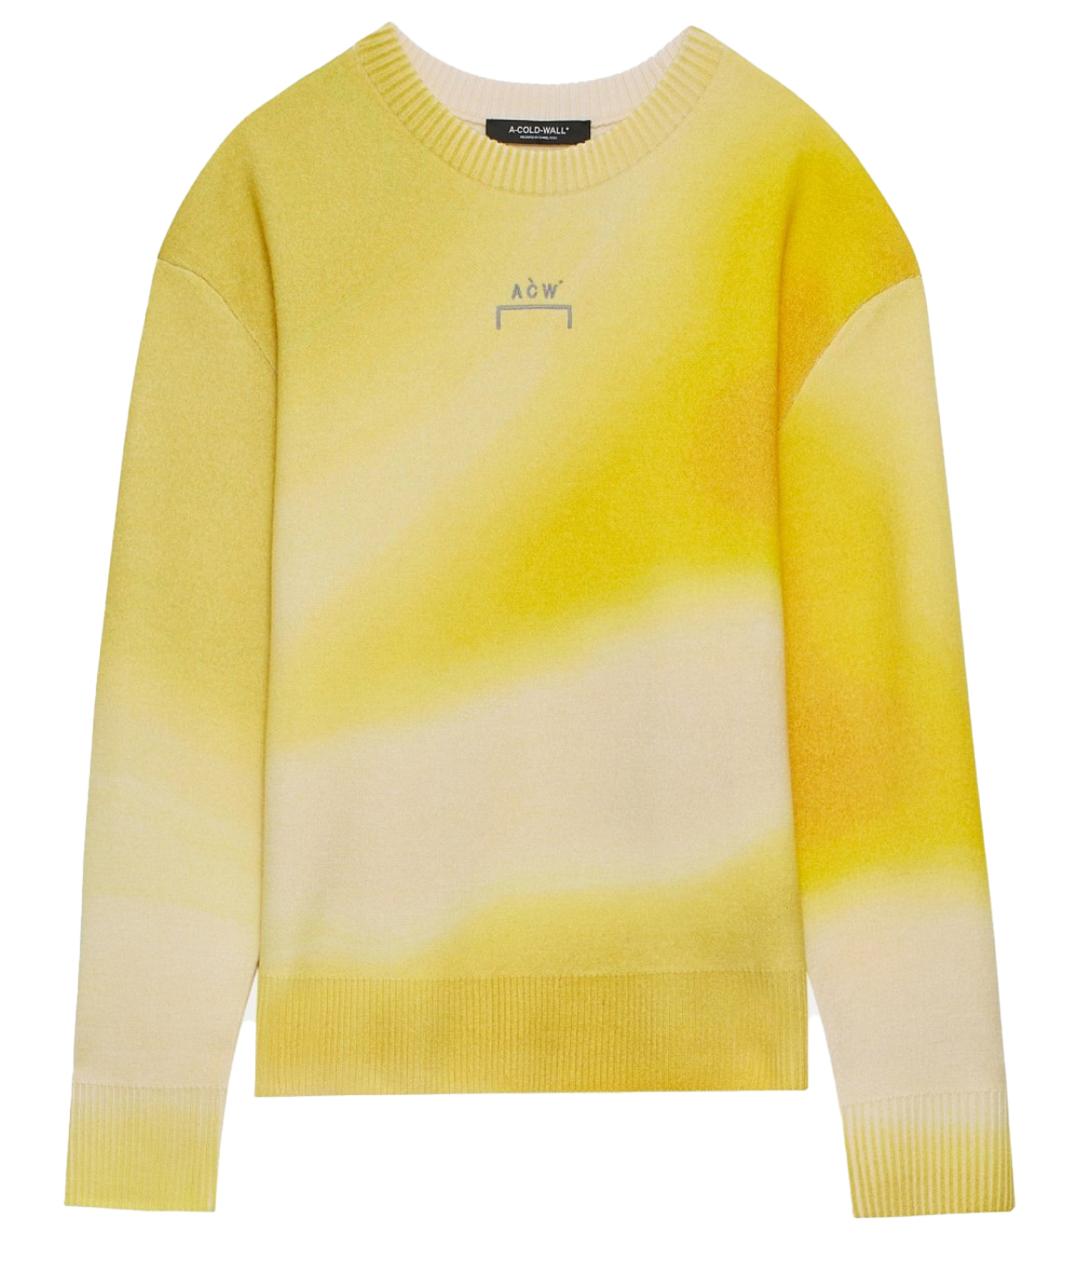 A-COLD-WALL* Желтый шерстяной джемпер / свитер, фото 1